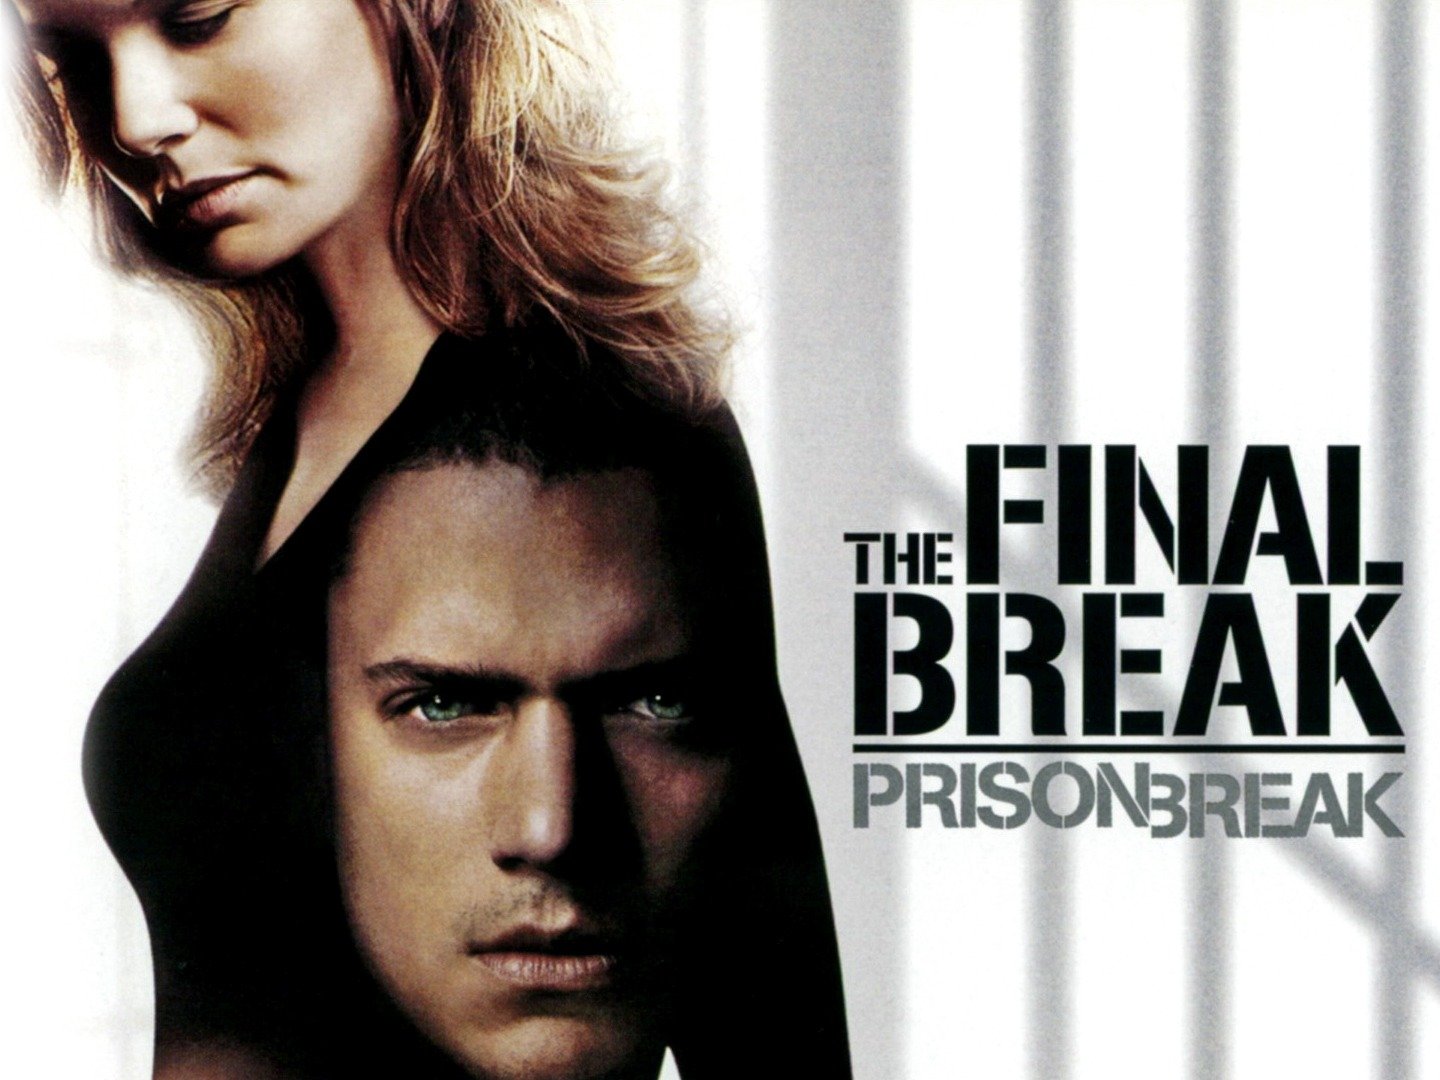 Final break. Побег из тюрьмы: финальный побег (2009, США). Побег финал. Побег из тюрьмы 2009 DVD. Побег из тюрьмы Постер.